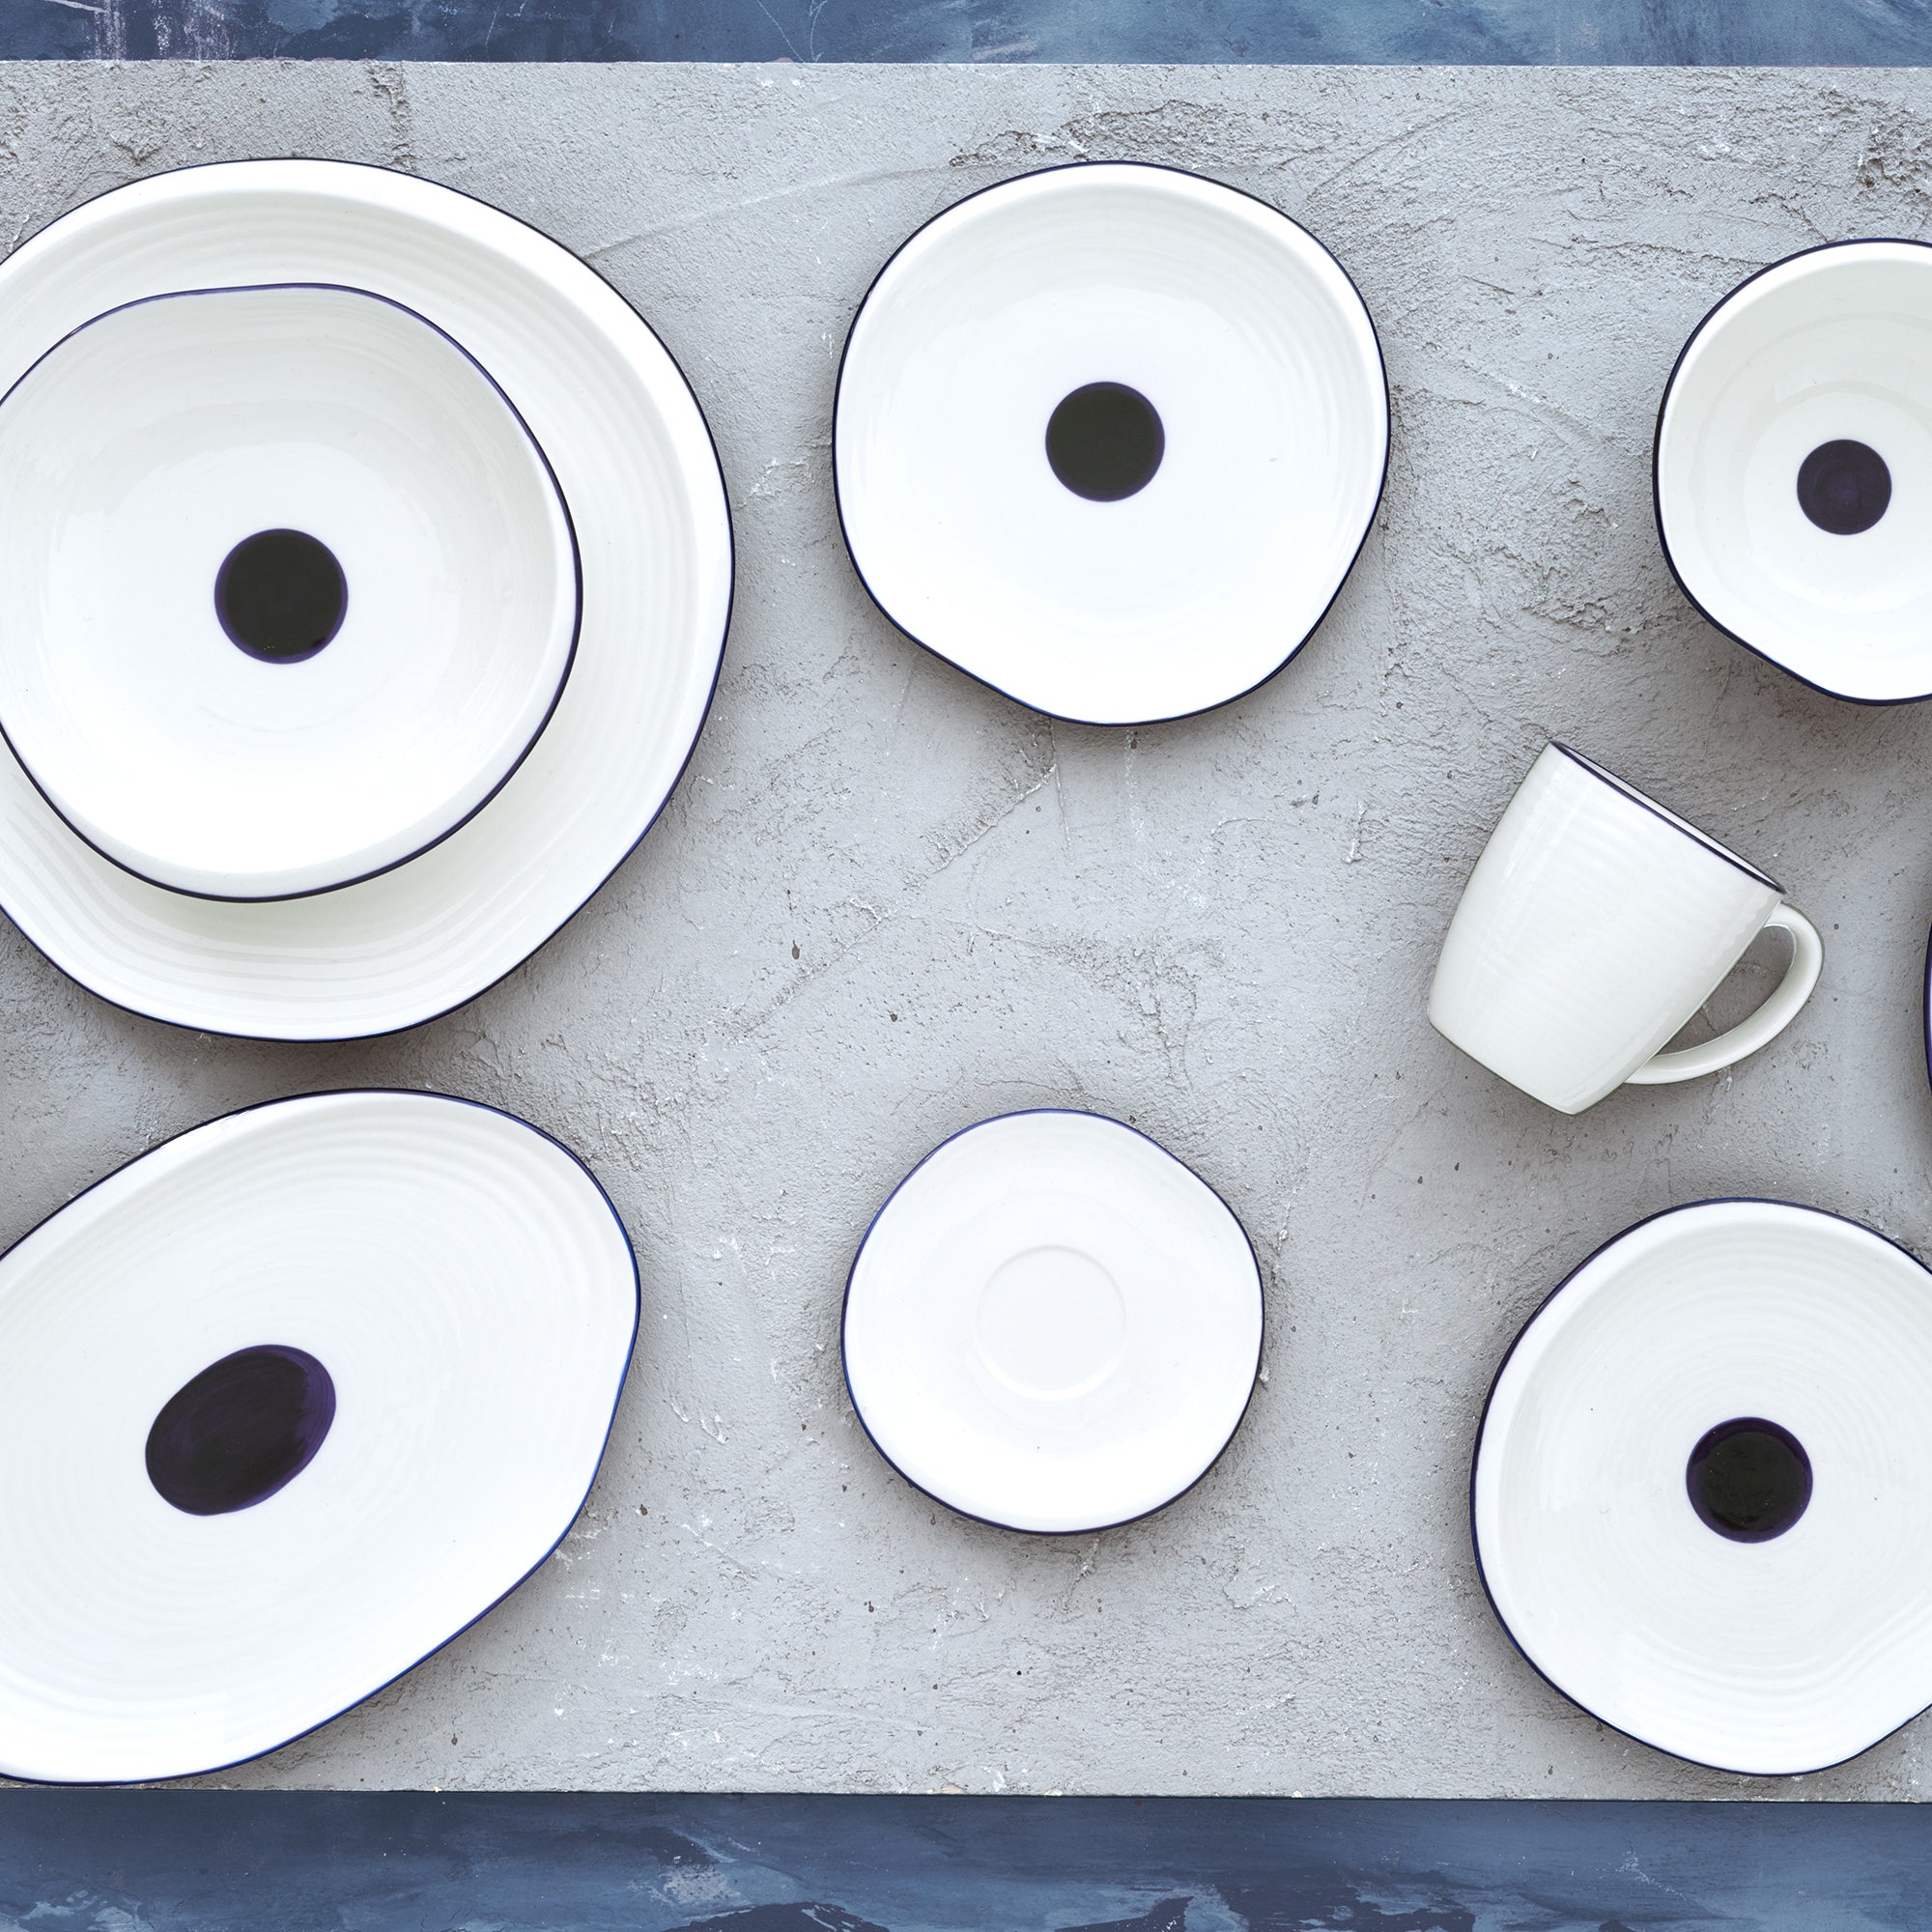 13-OZ Porcelain Mug White with Blue Rim